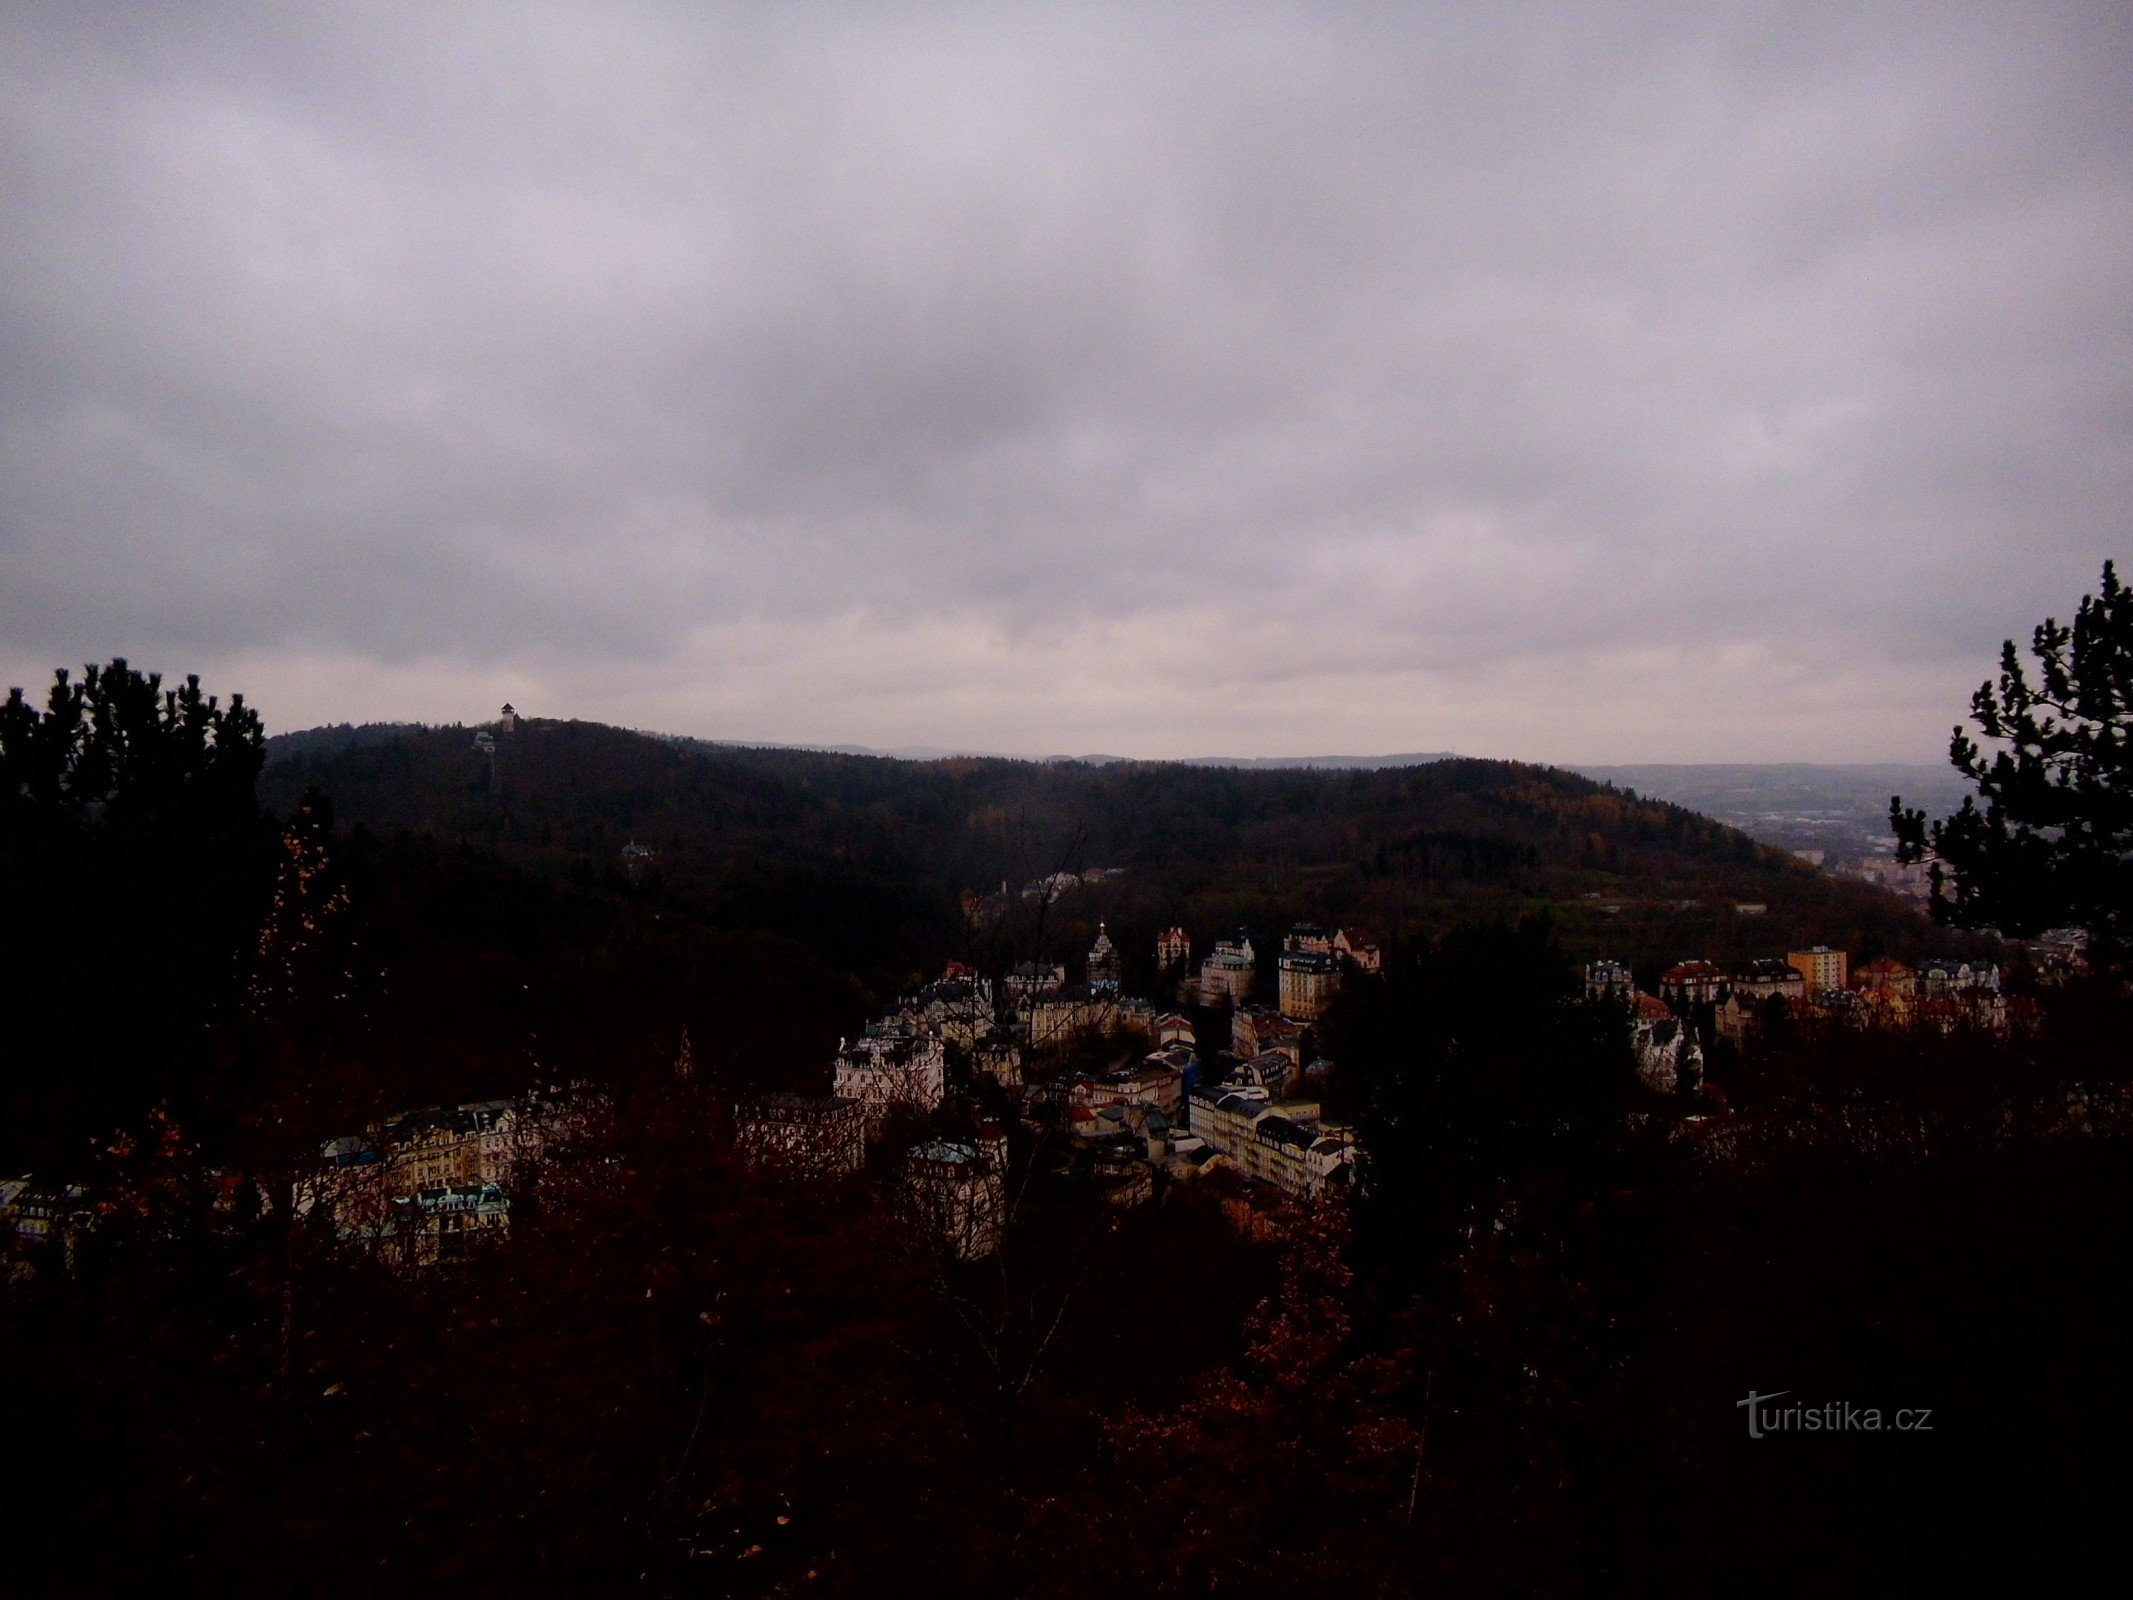 Omkring Karlovy Vary - gennem de tre kors, udsigtstårnet og observatoriet